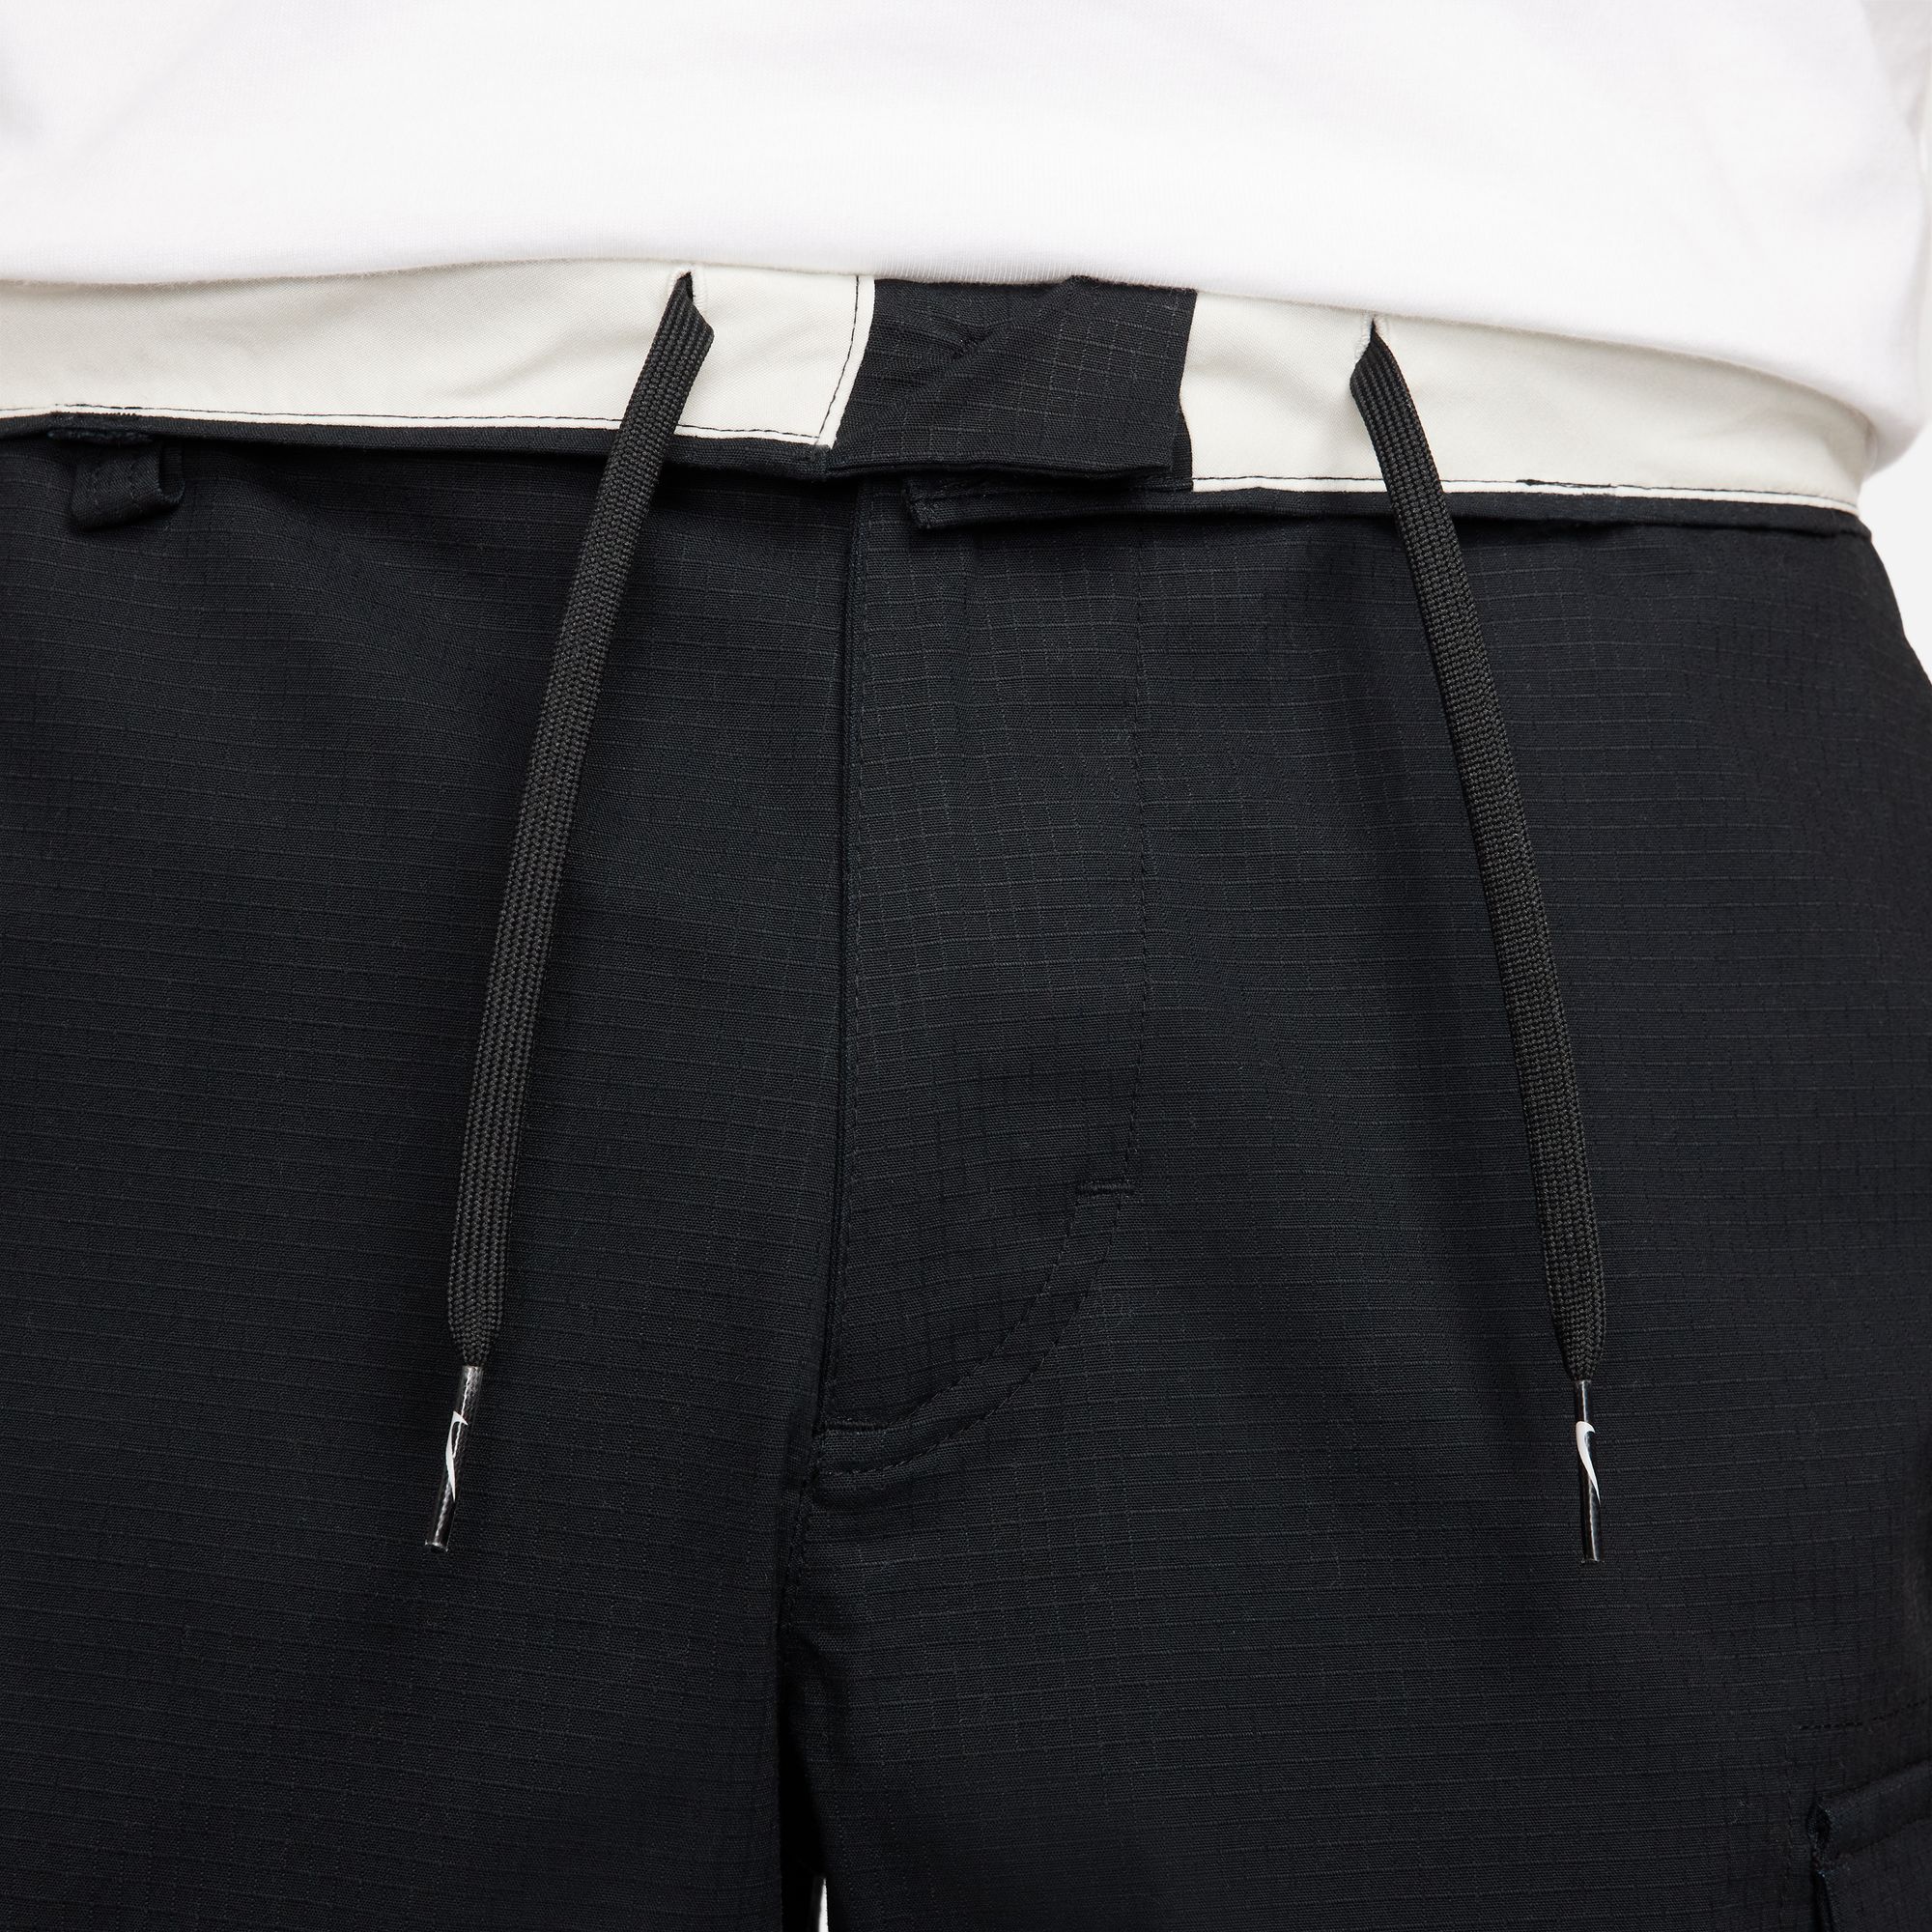 Nike SB Kearny Men's Cargo Skate Pants Black